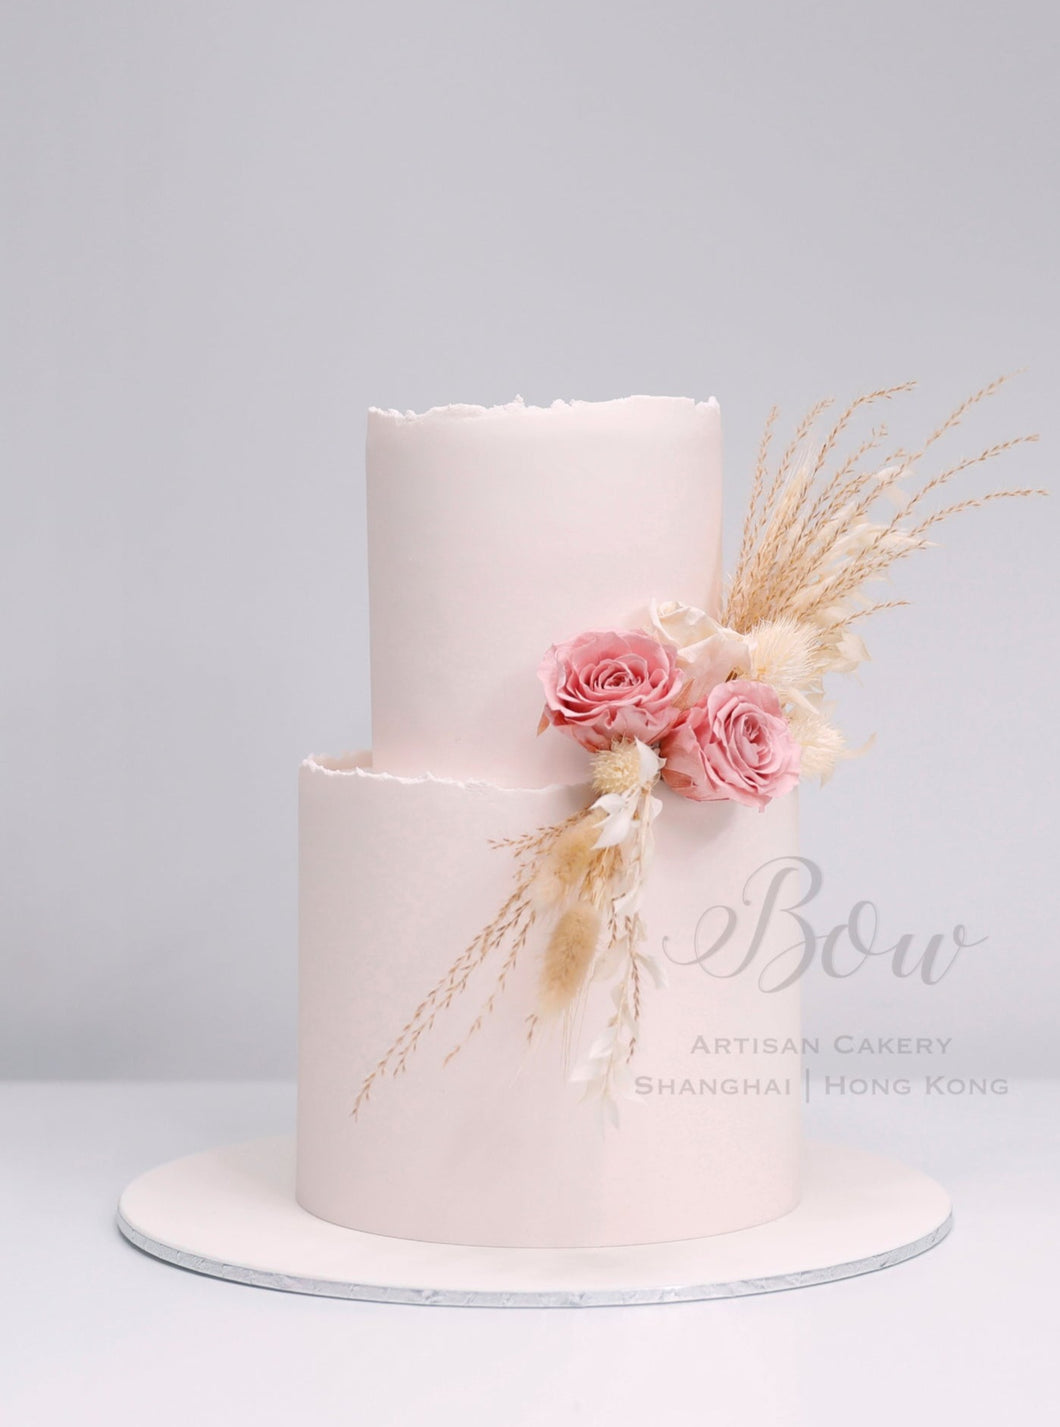 Boho Blush | BOW Artisan Cakery | Wedding Display Cake Rental | Hong Kong